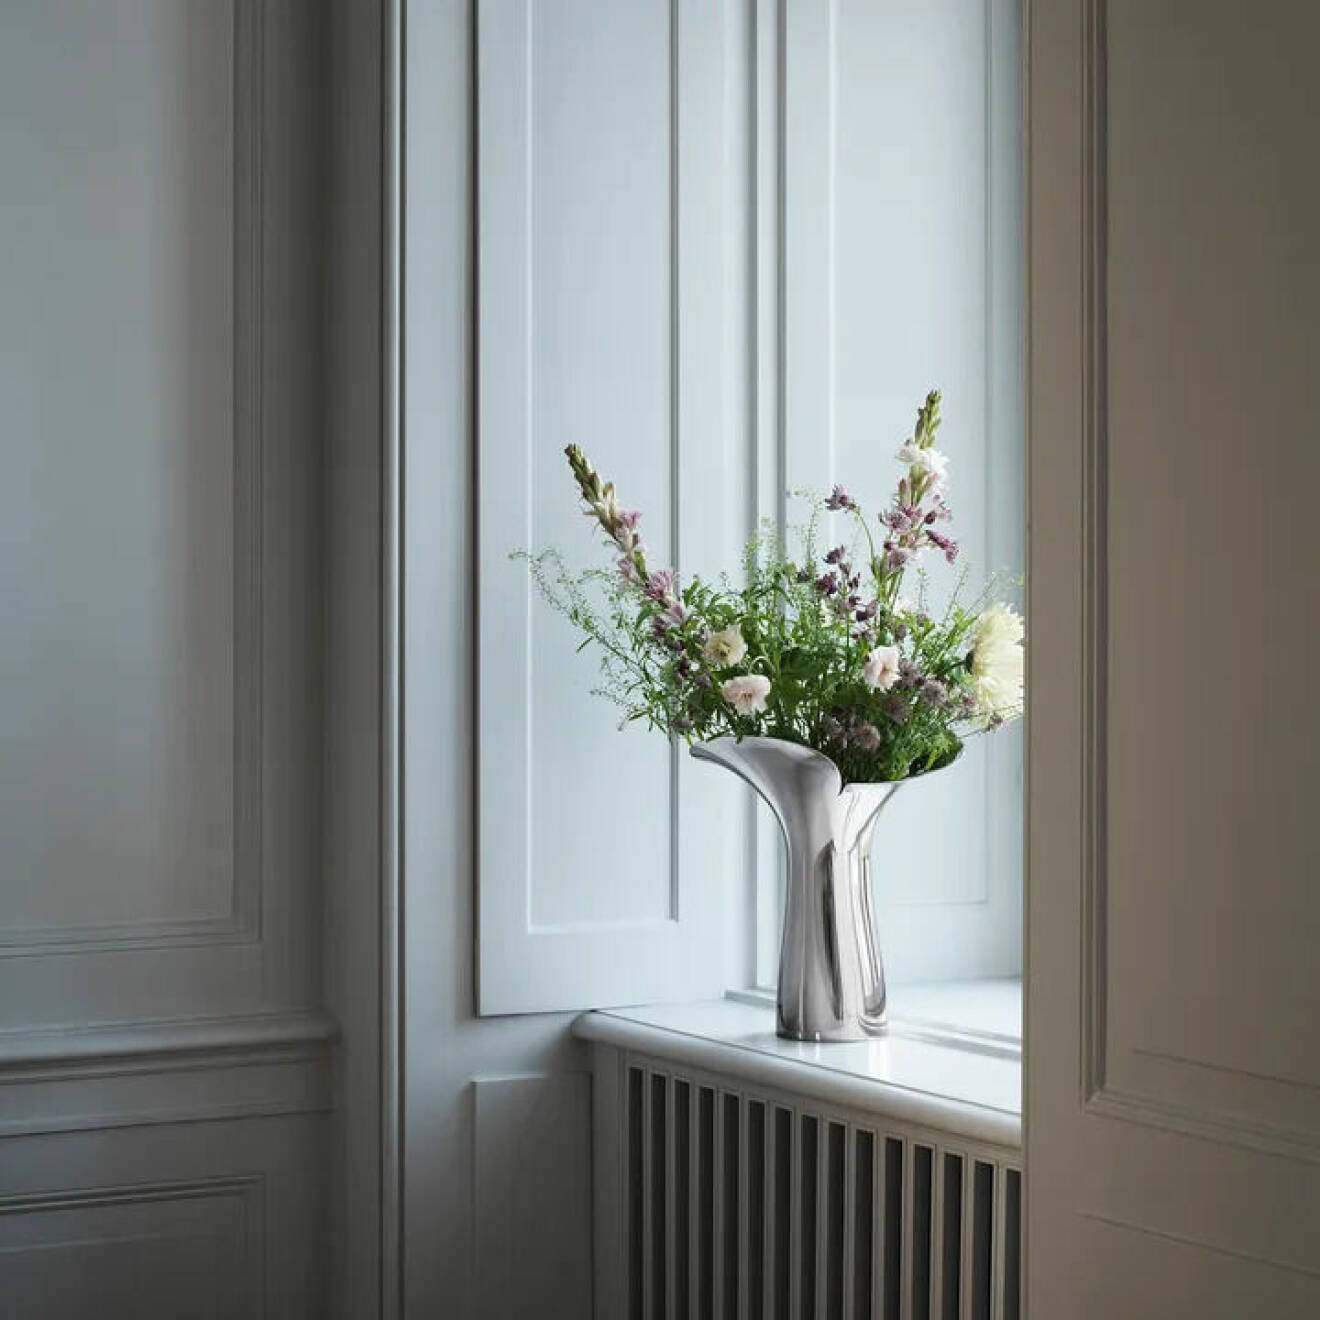 Bloom Botanica vas i rostfritt stål från Georg Jensen